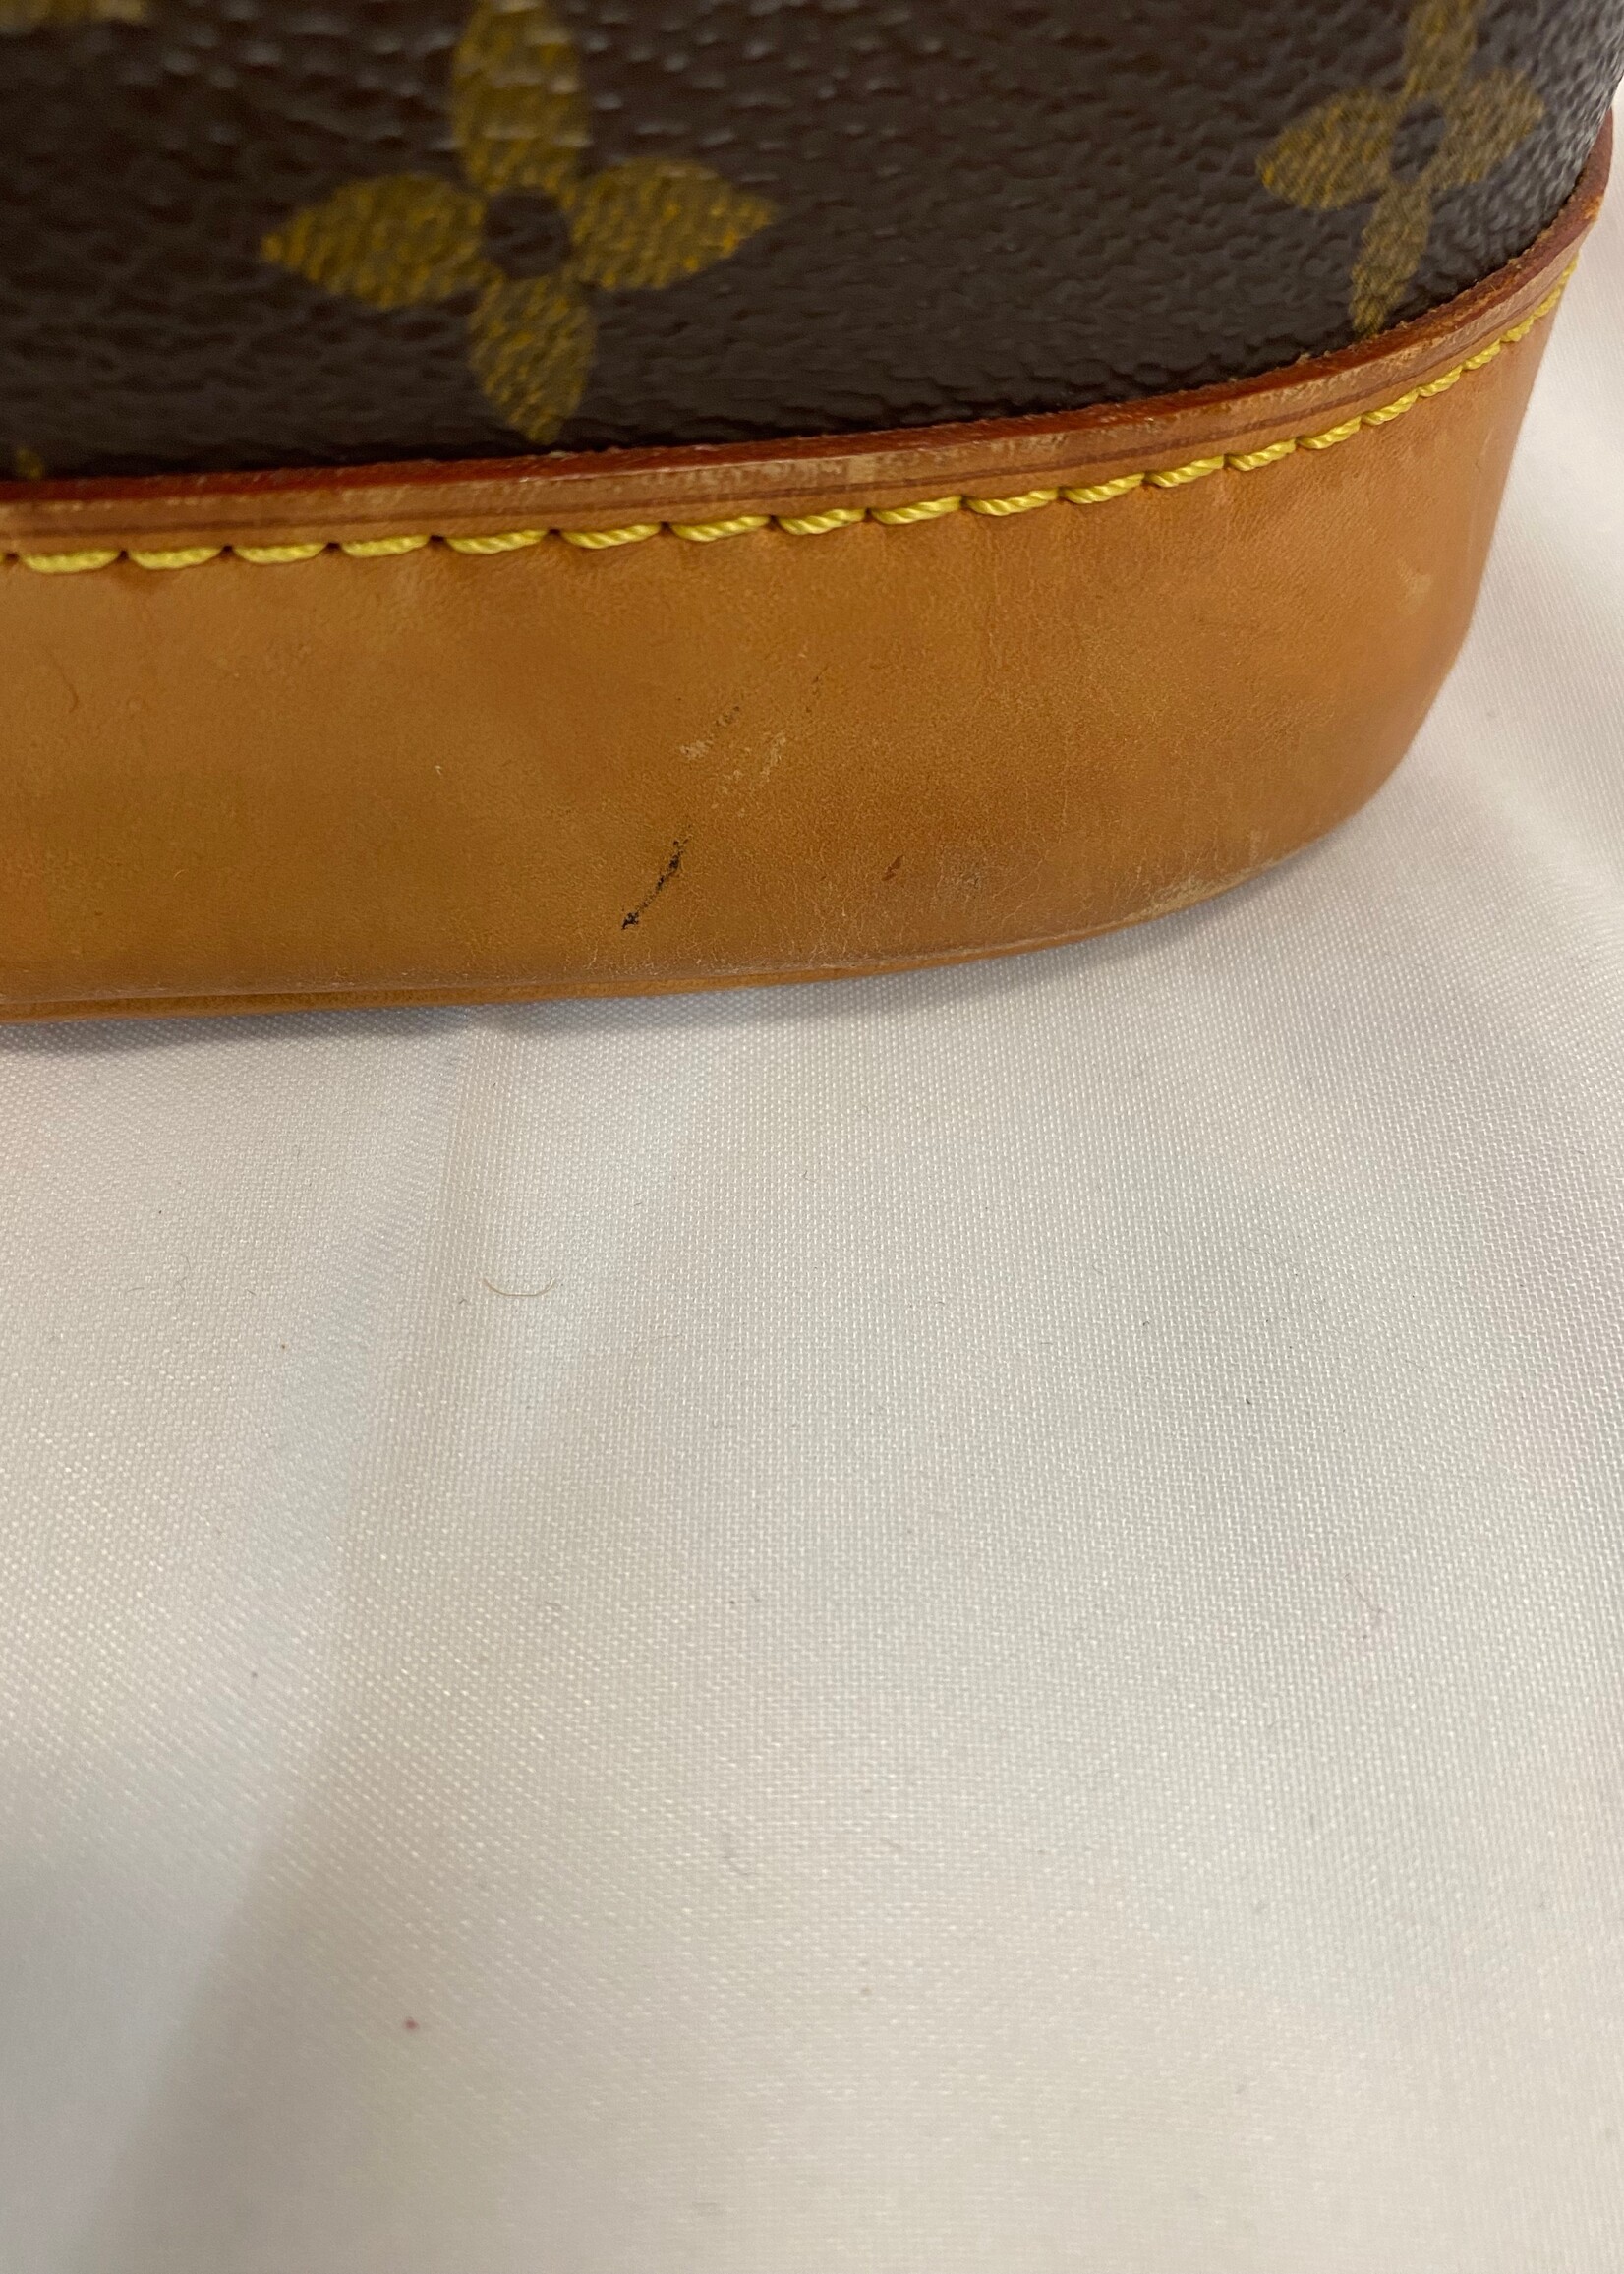 Louis Vuitton Vintage Alma Handbag Monogram Canvas Pm Auction